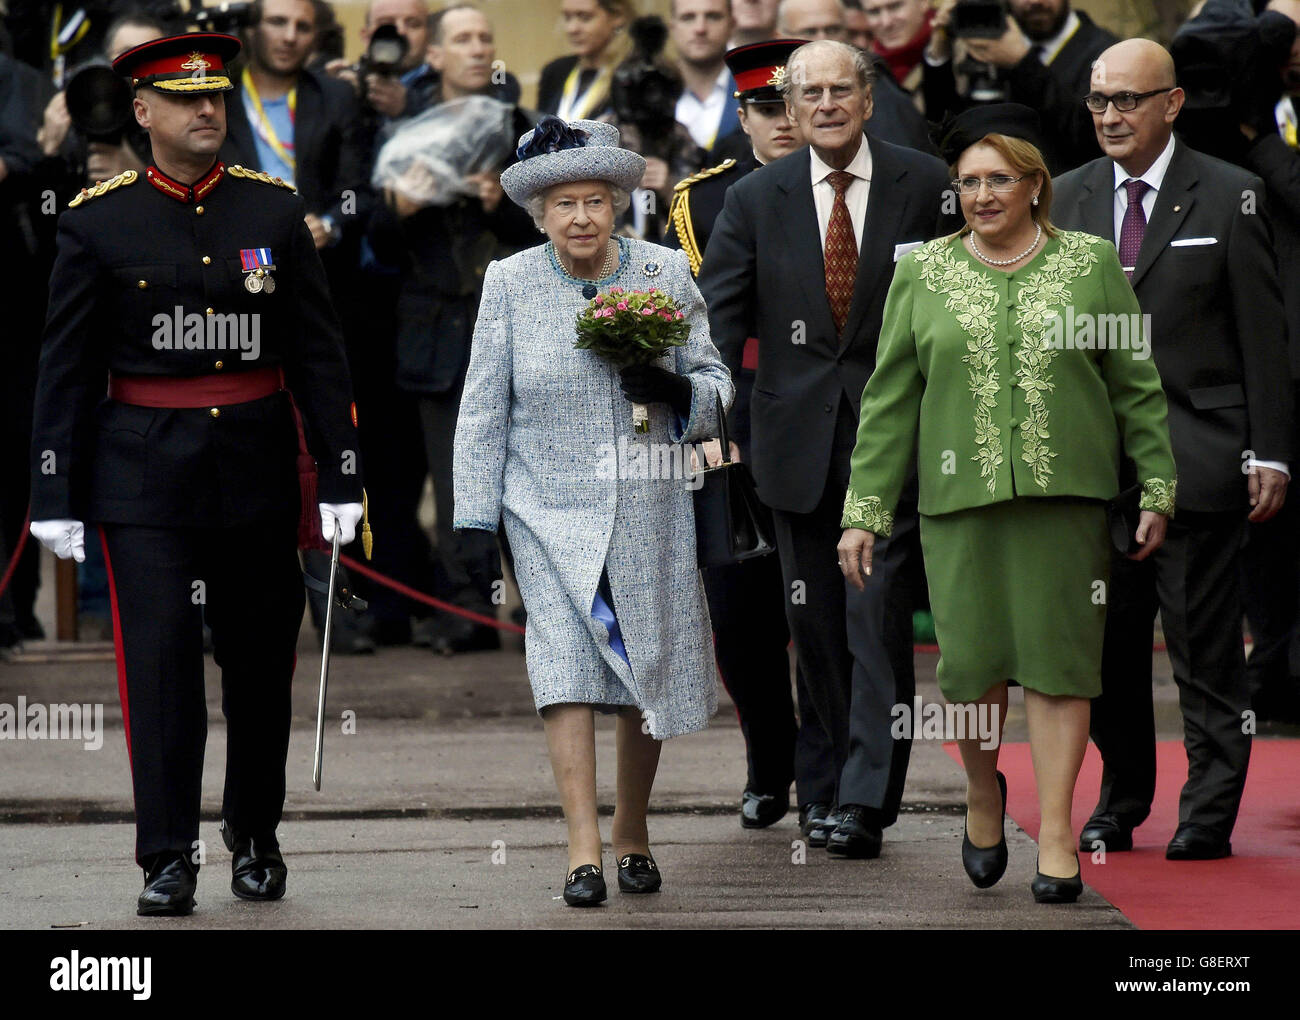 La reine Elizabeth II est accueillie par la présidente maltaise Marie Louise Coleiro alors qu'elle arrive au Palais San Anton à Attard pour la Réunion des chefs d'État du Commonwealth (CHOGM) à Malte. Banque D'Images